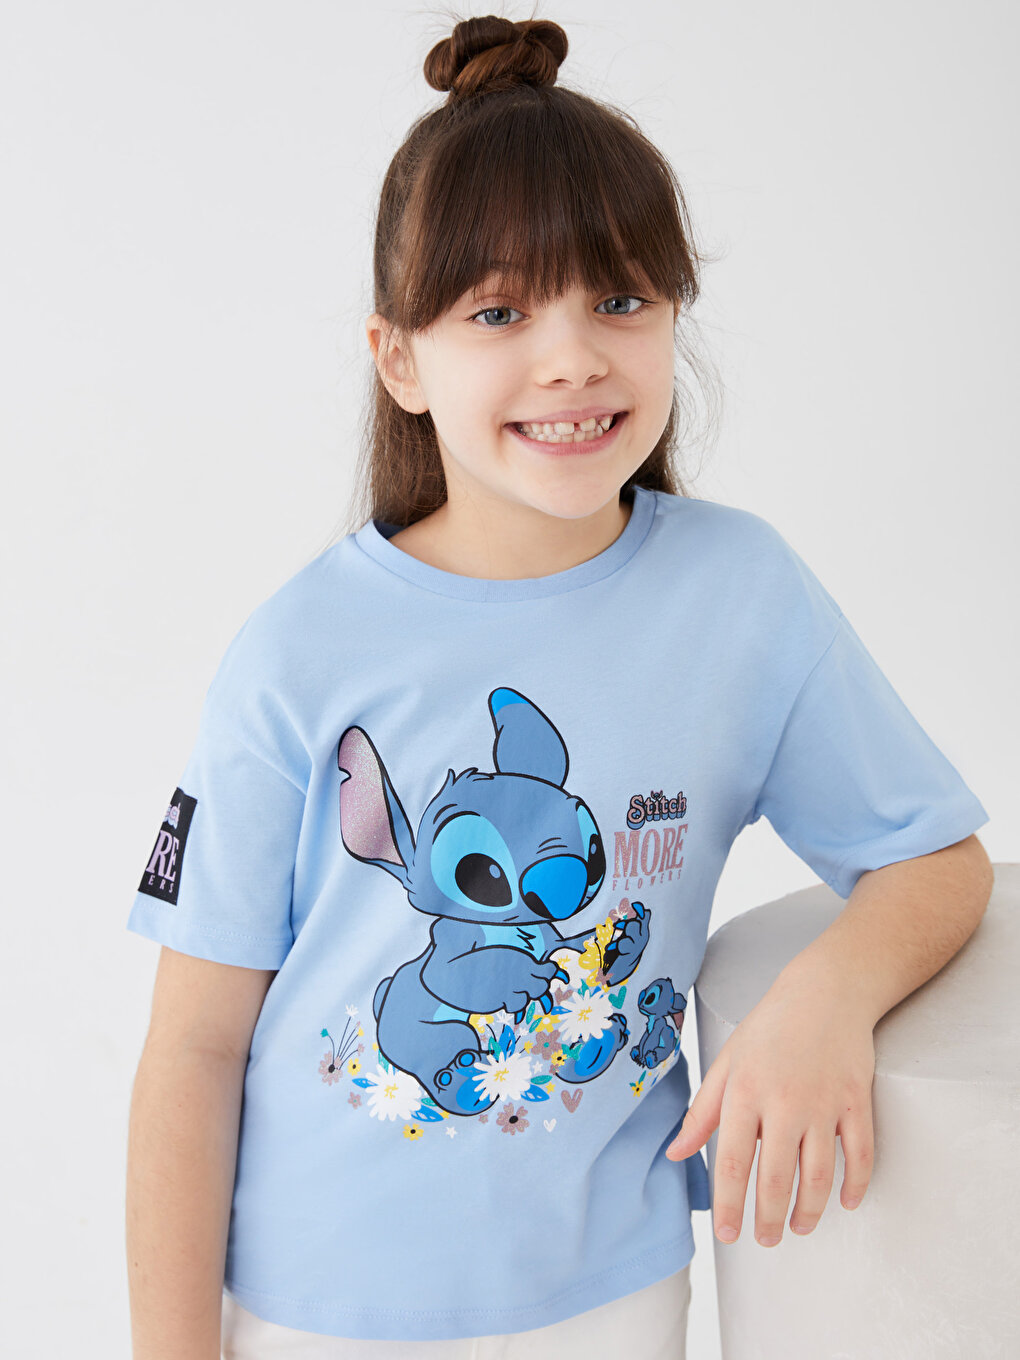 Дизайн детской футболки для девочек